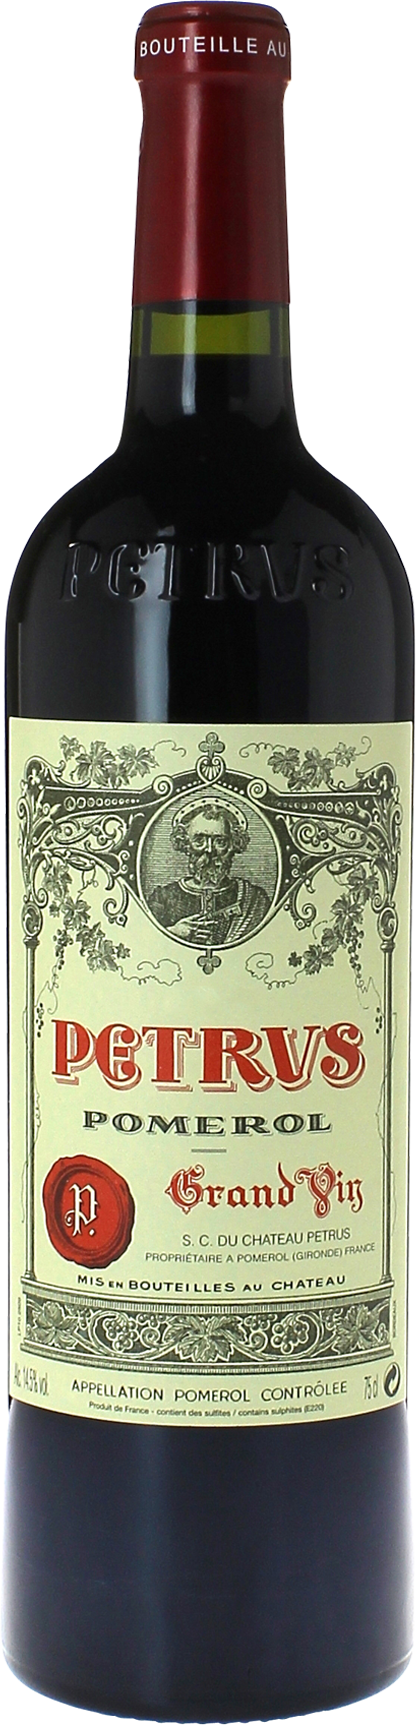 Petrus 1986